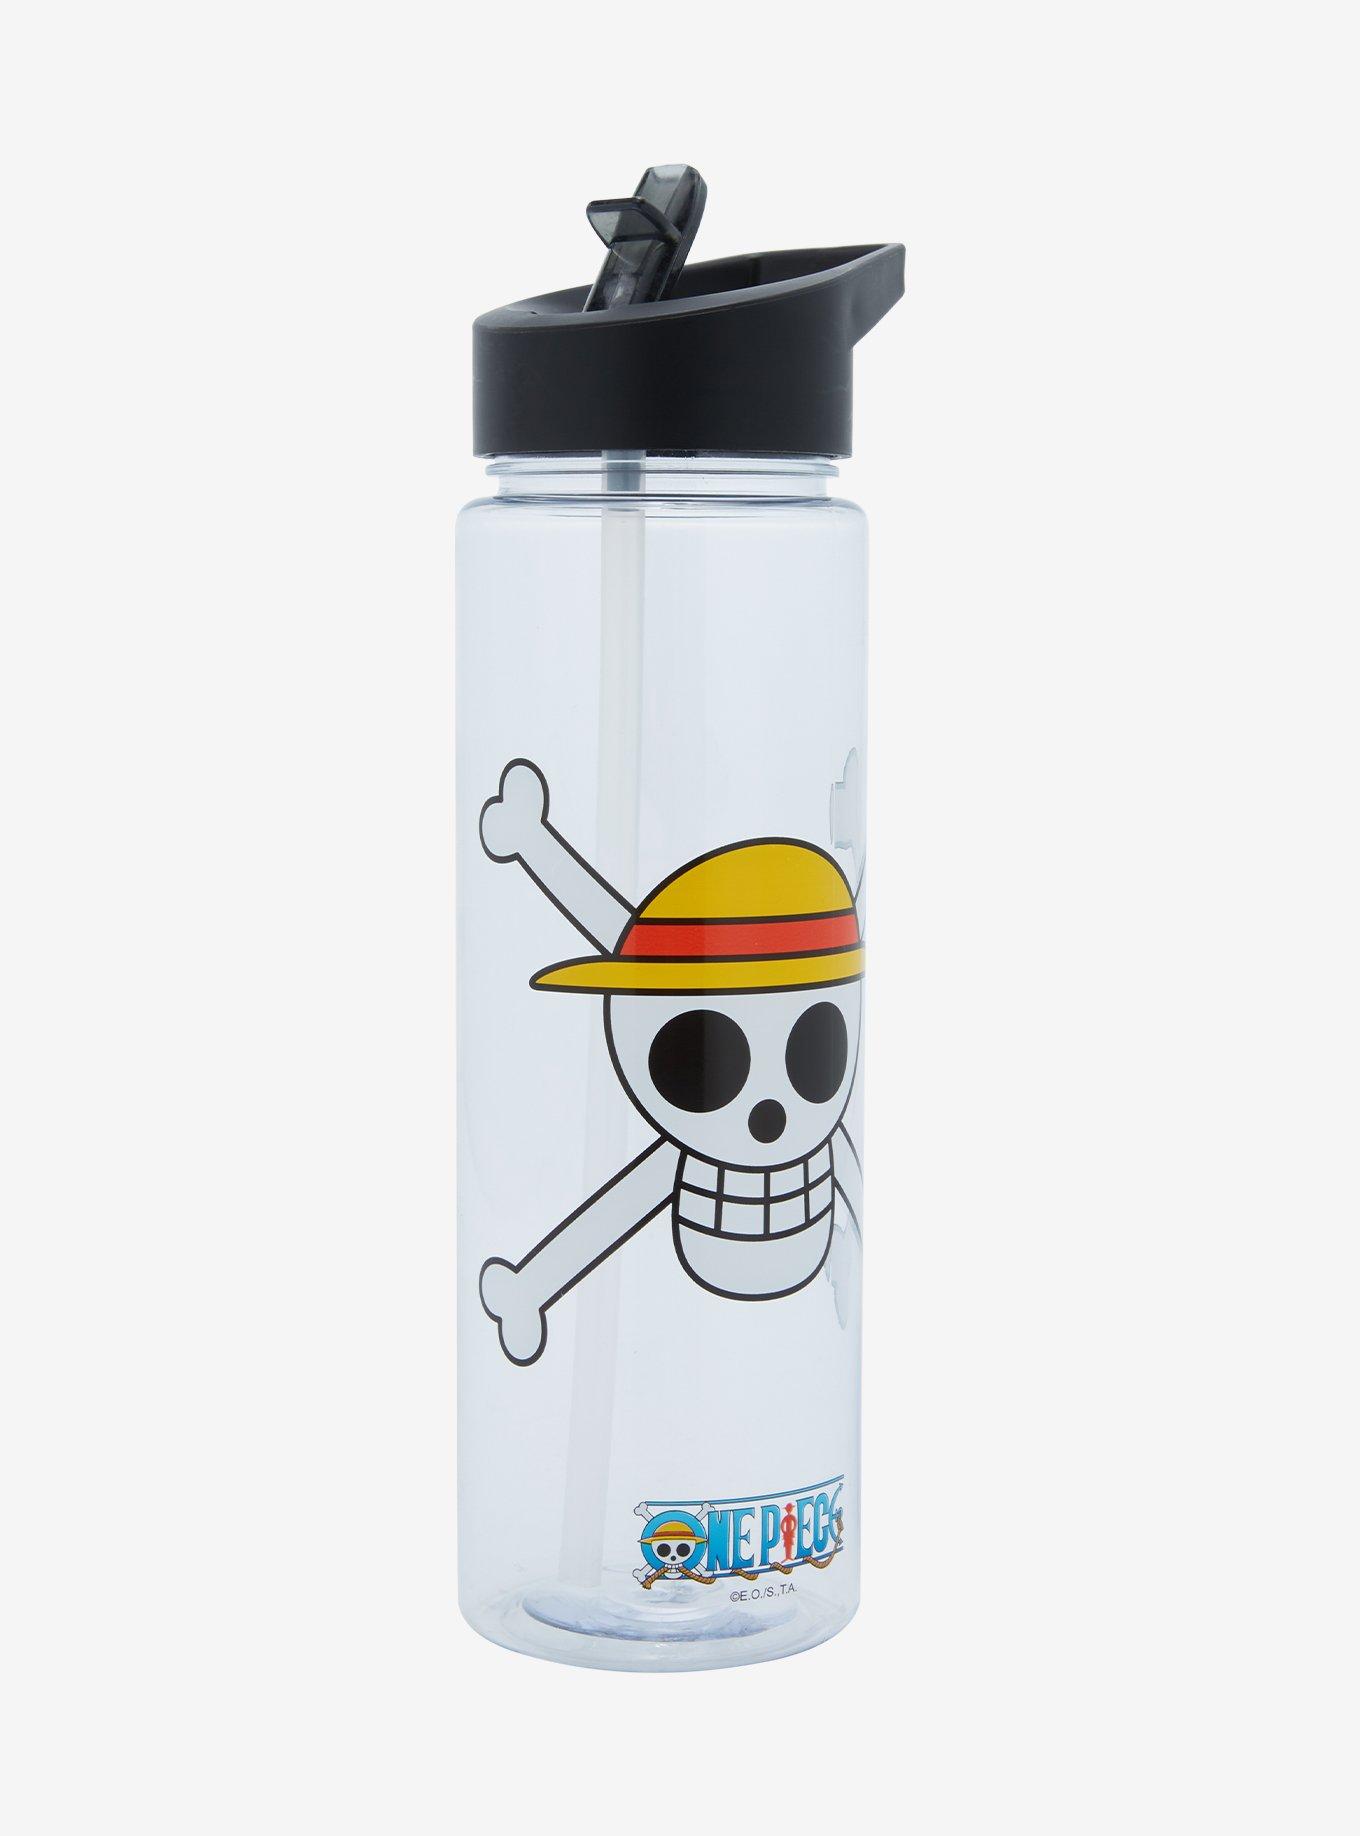 One Piece Jolly Roger Water Bottle